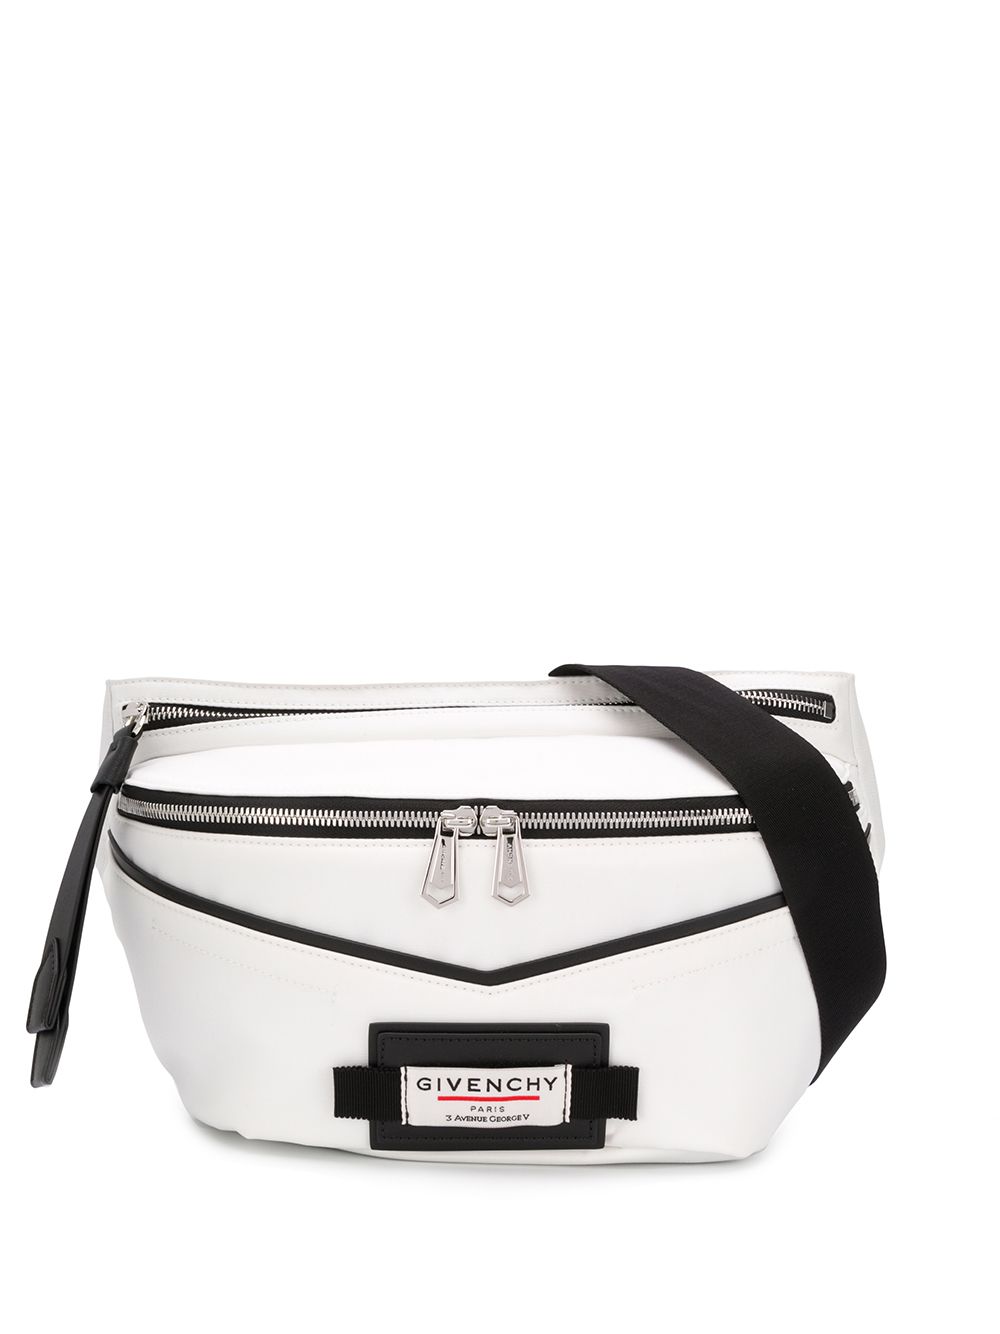 фото Givenchy поясная сумка с нашивкой-логотипом